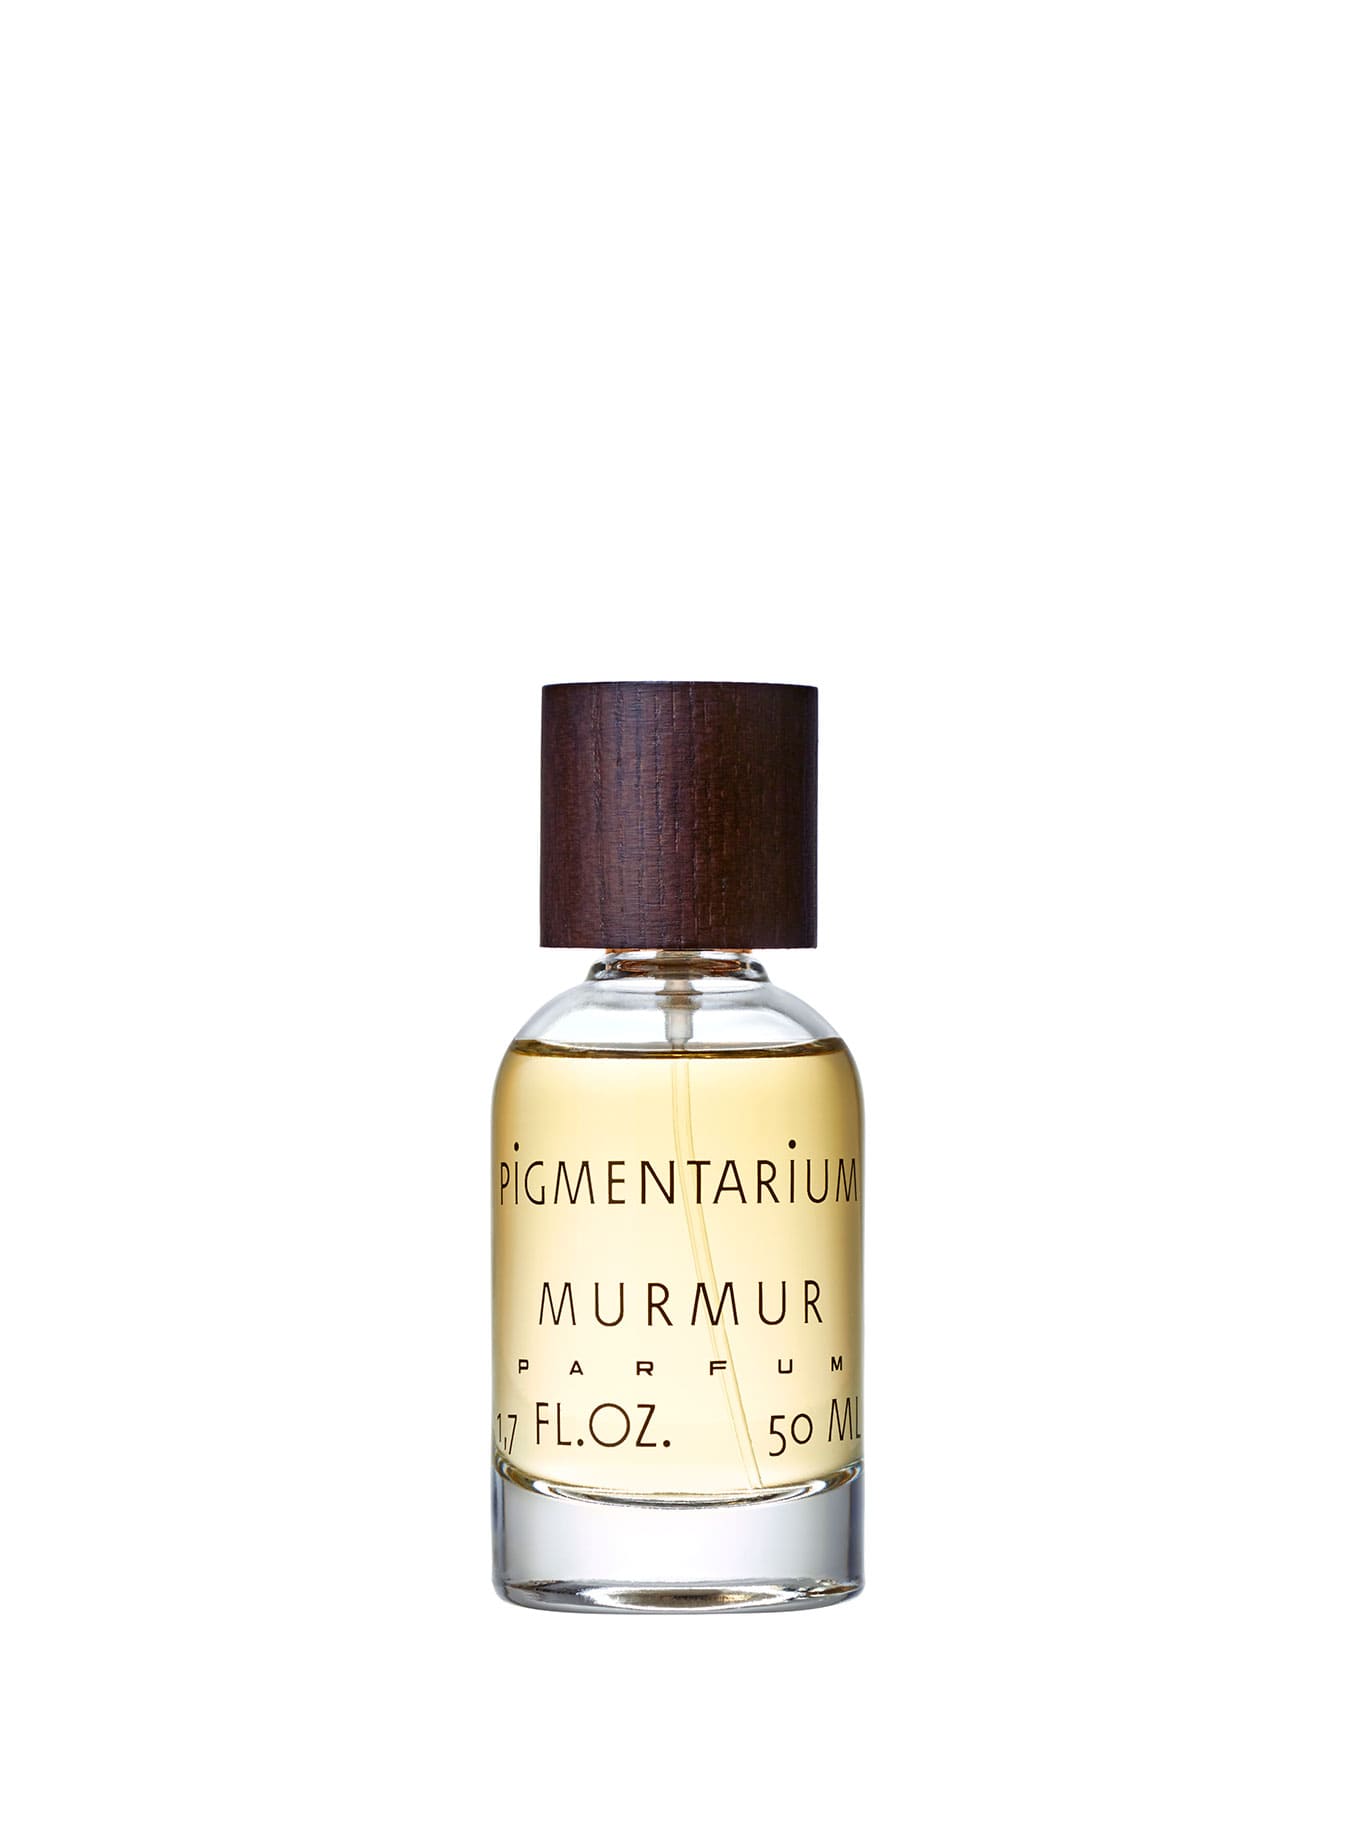 Botella de Eau de Parfum Murmur de Pigmentarium. Un perfume envuelto en misterio que, como un susurro, combina las seductoras notas de ámbar gris, oud y sándalo, complementadas con rosa damascena y una carga sensual de almizcle palpitante y civeta.